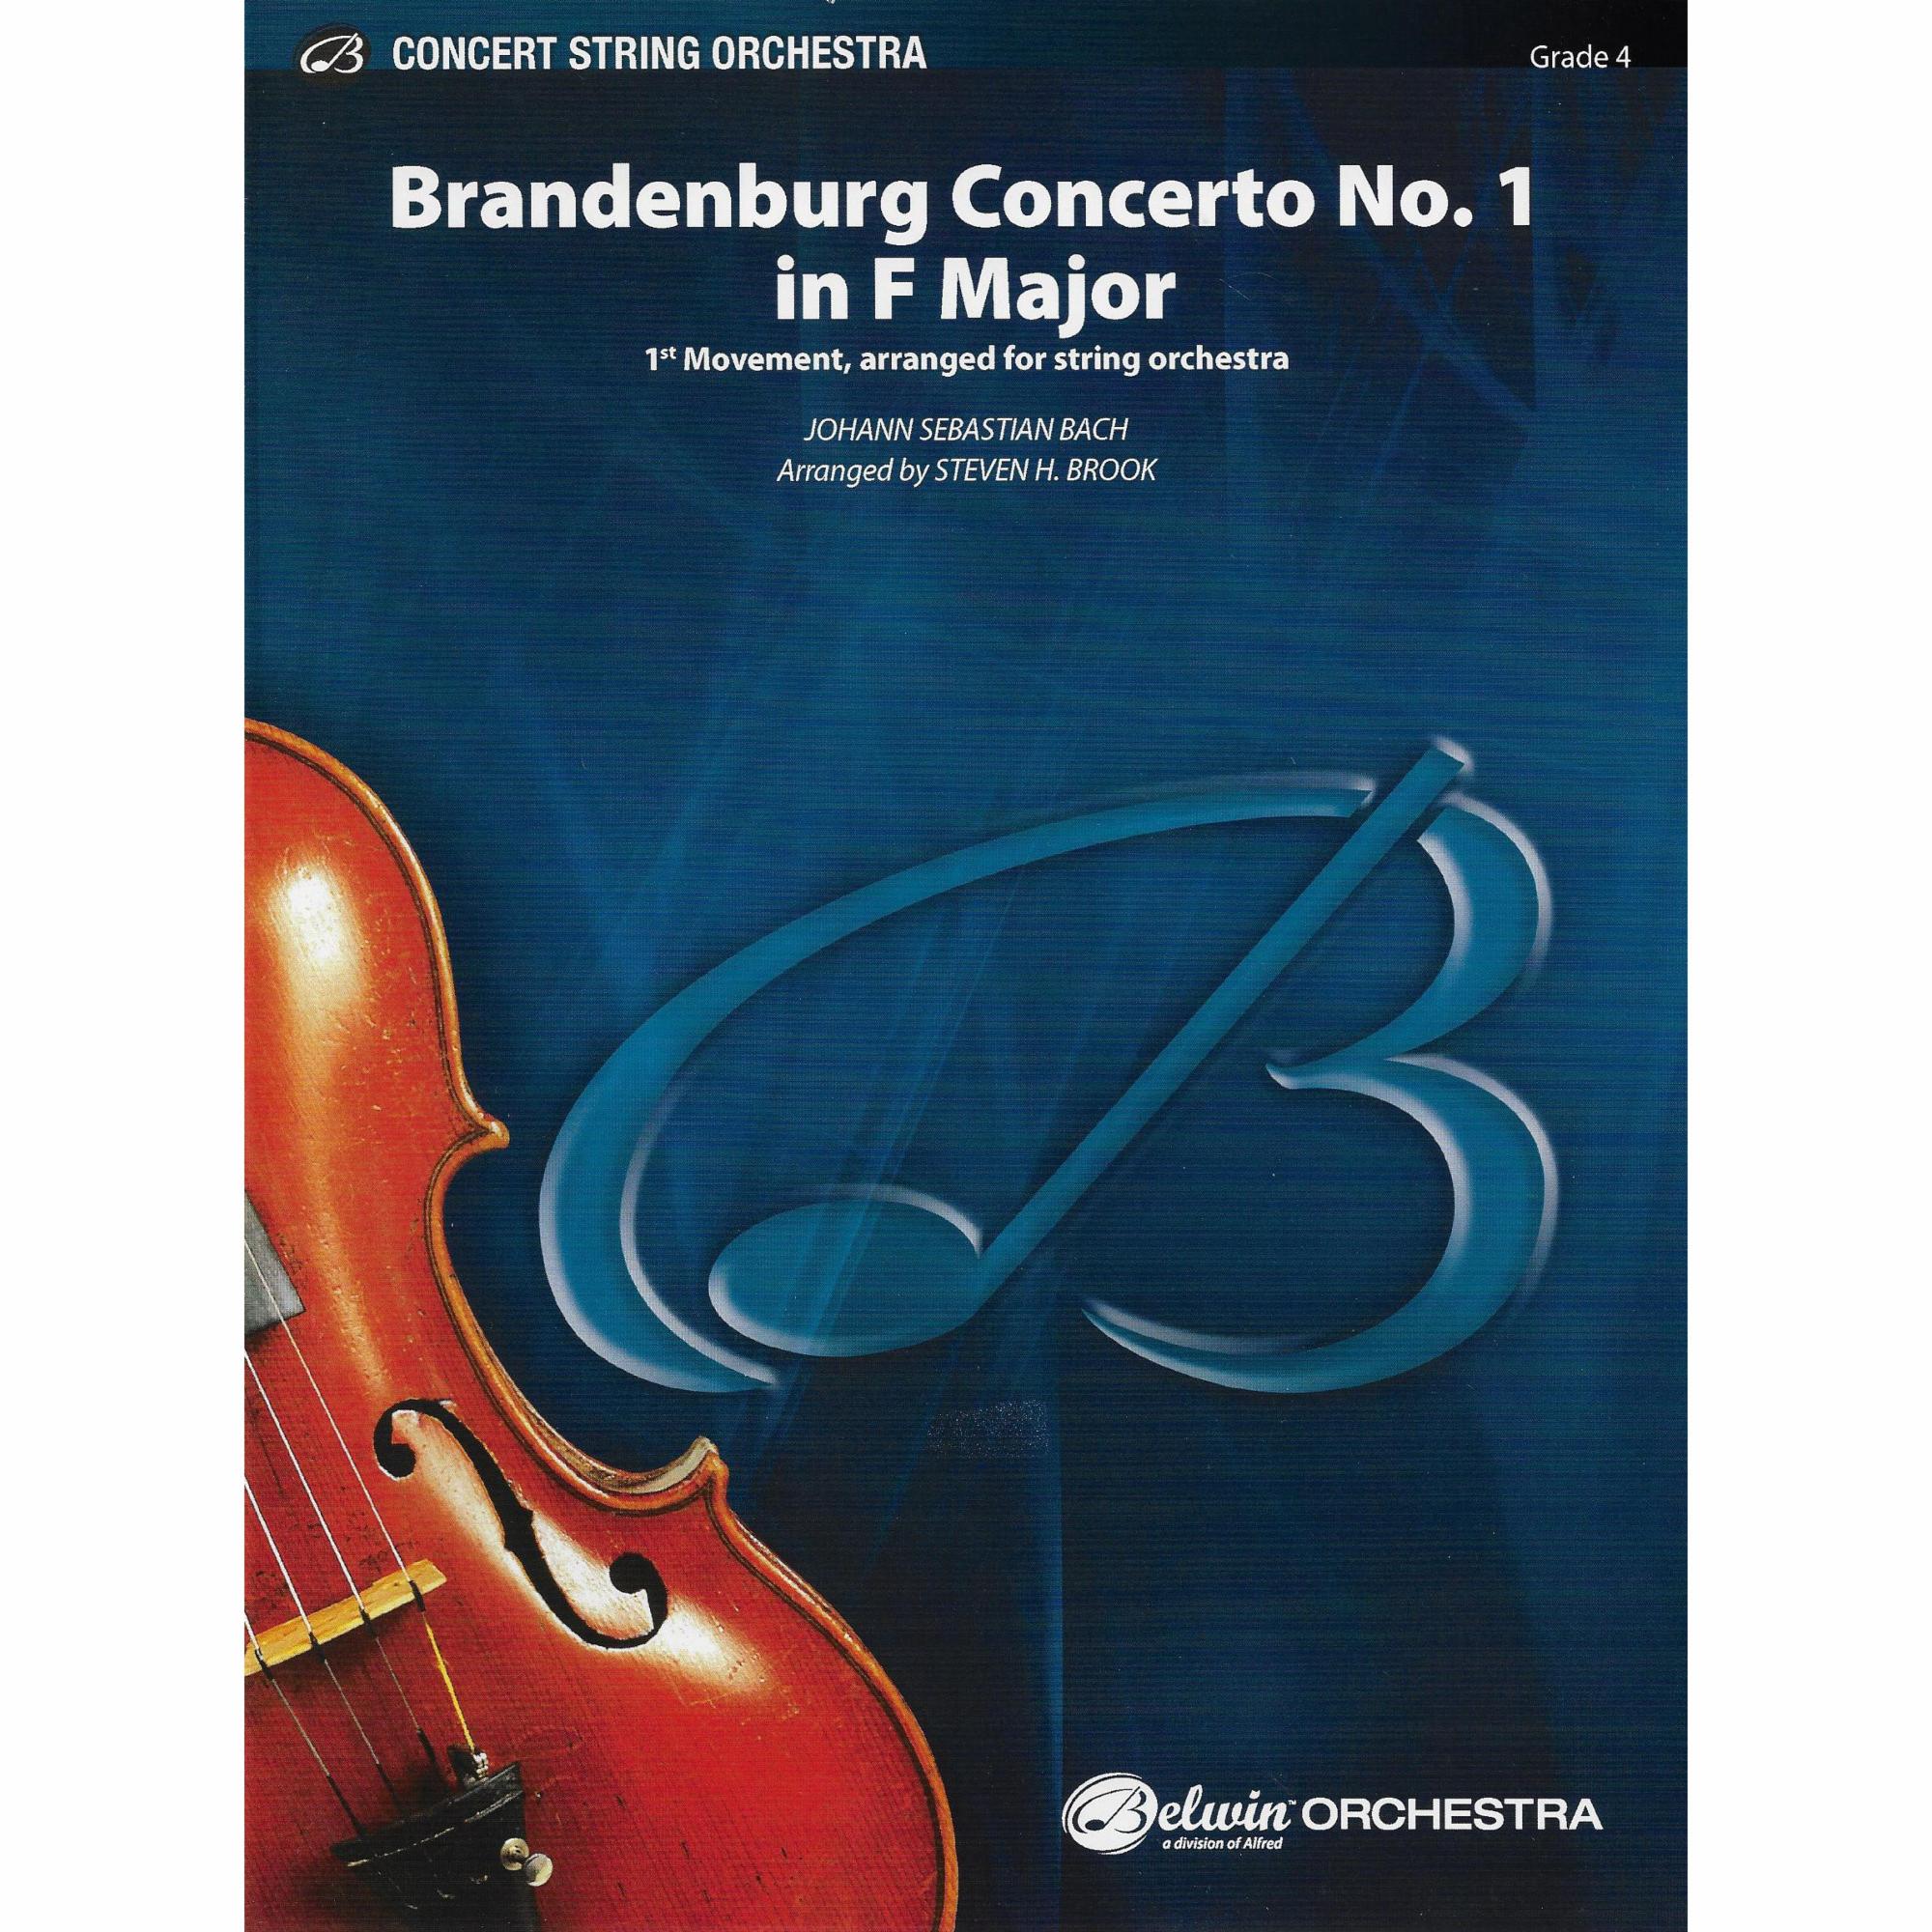 Brandenburg Concerto No. 1 in F Major for String Orchestra